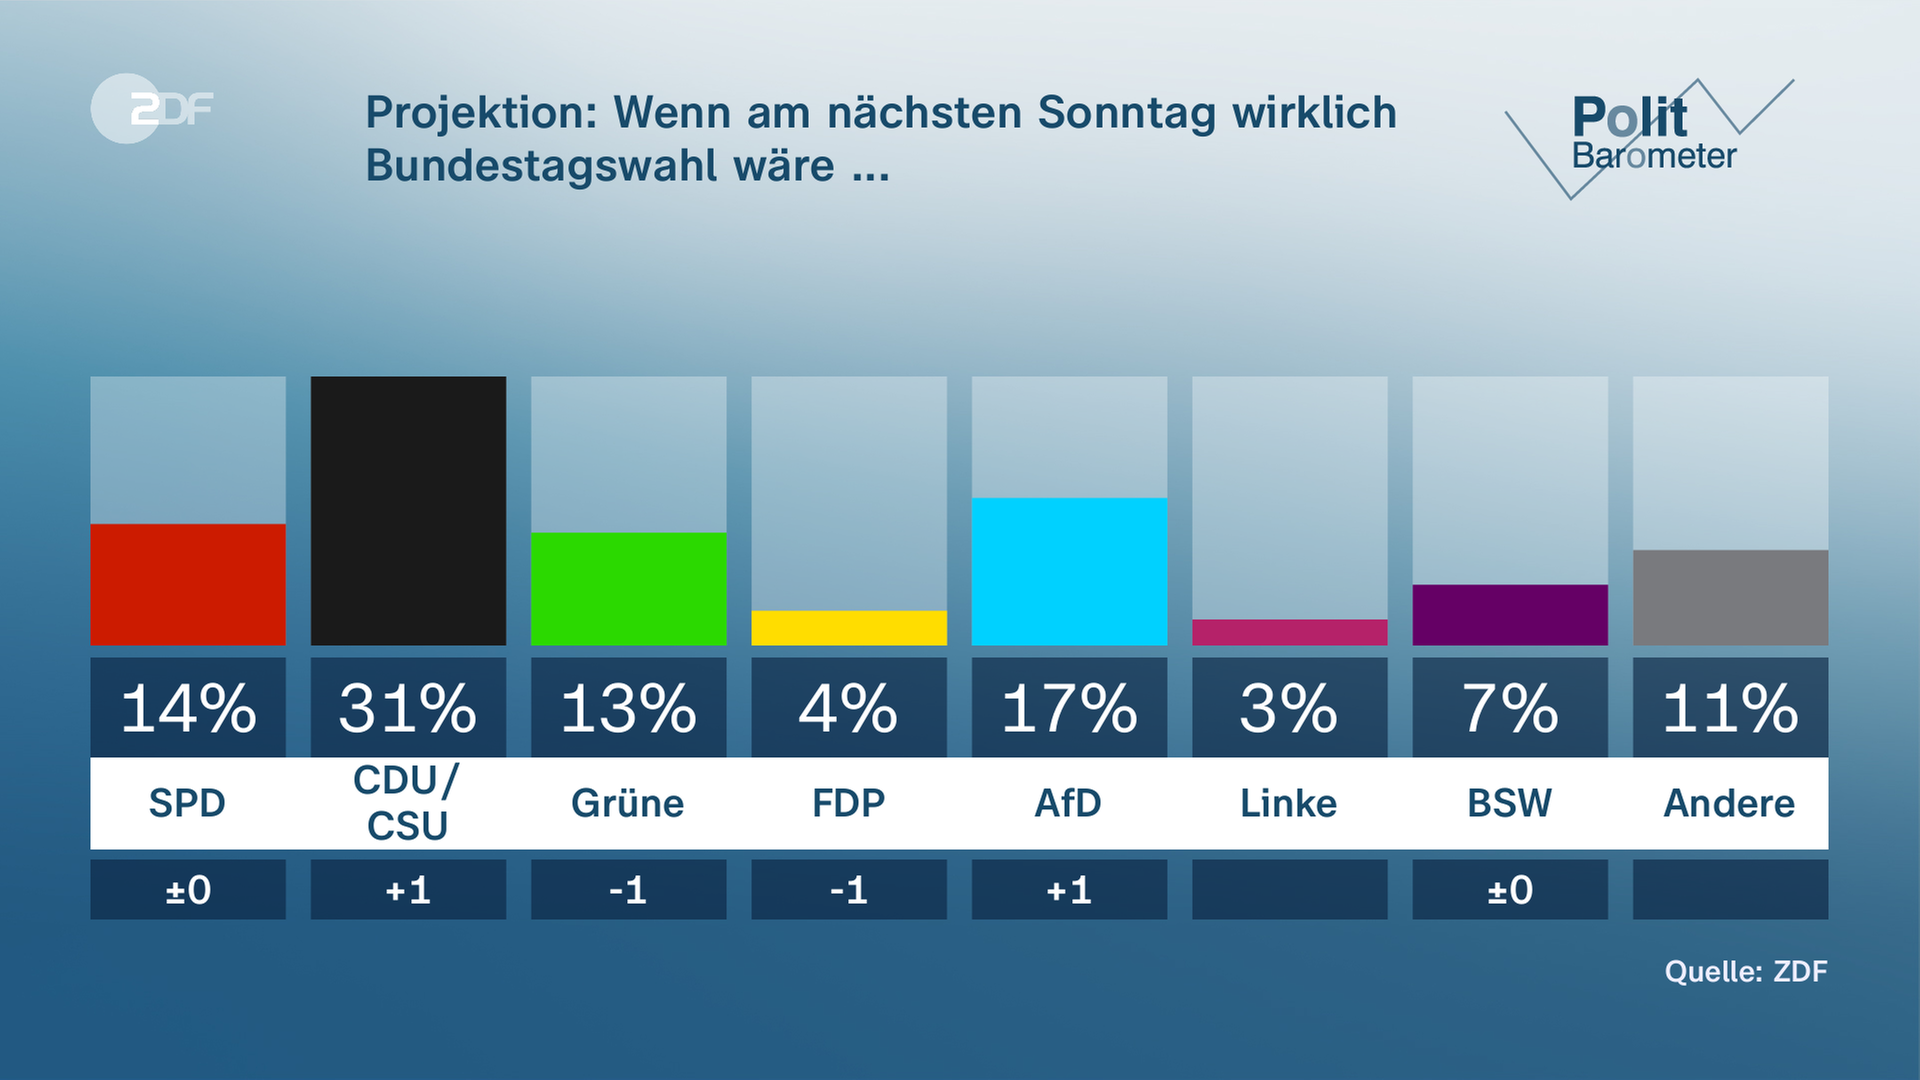 ZDF-Politbarometer Grafik: Projektion: Wenn am nächsten Sonntag wirklich Bundestagwahl wäre ...